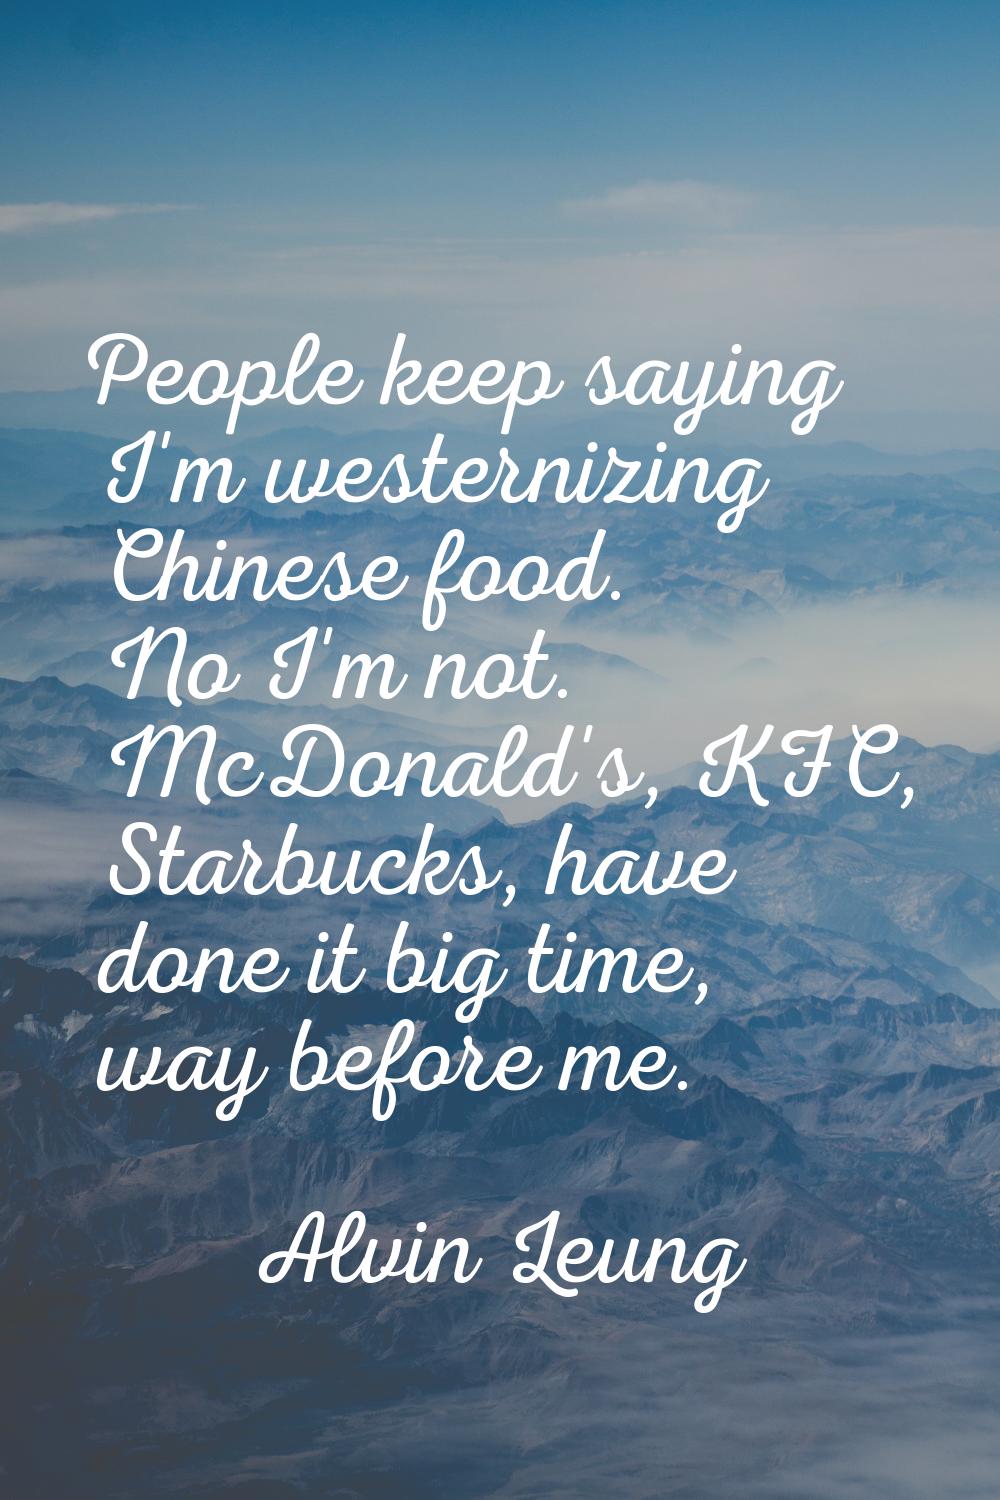 People keep saying I'm westernizing Chinese food. No I'm not. McDonald's, KFC, Starbucks, have done